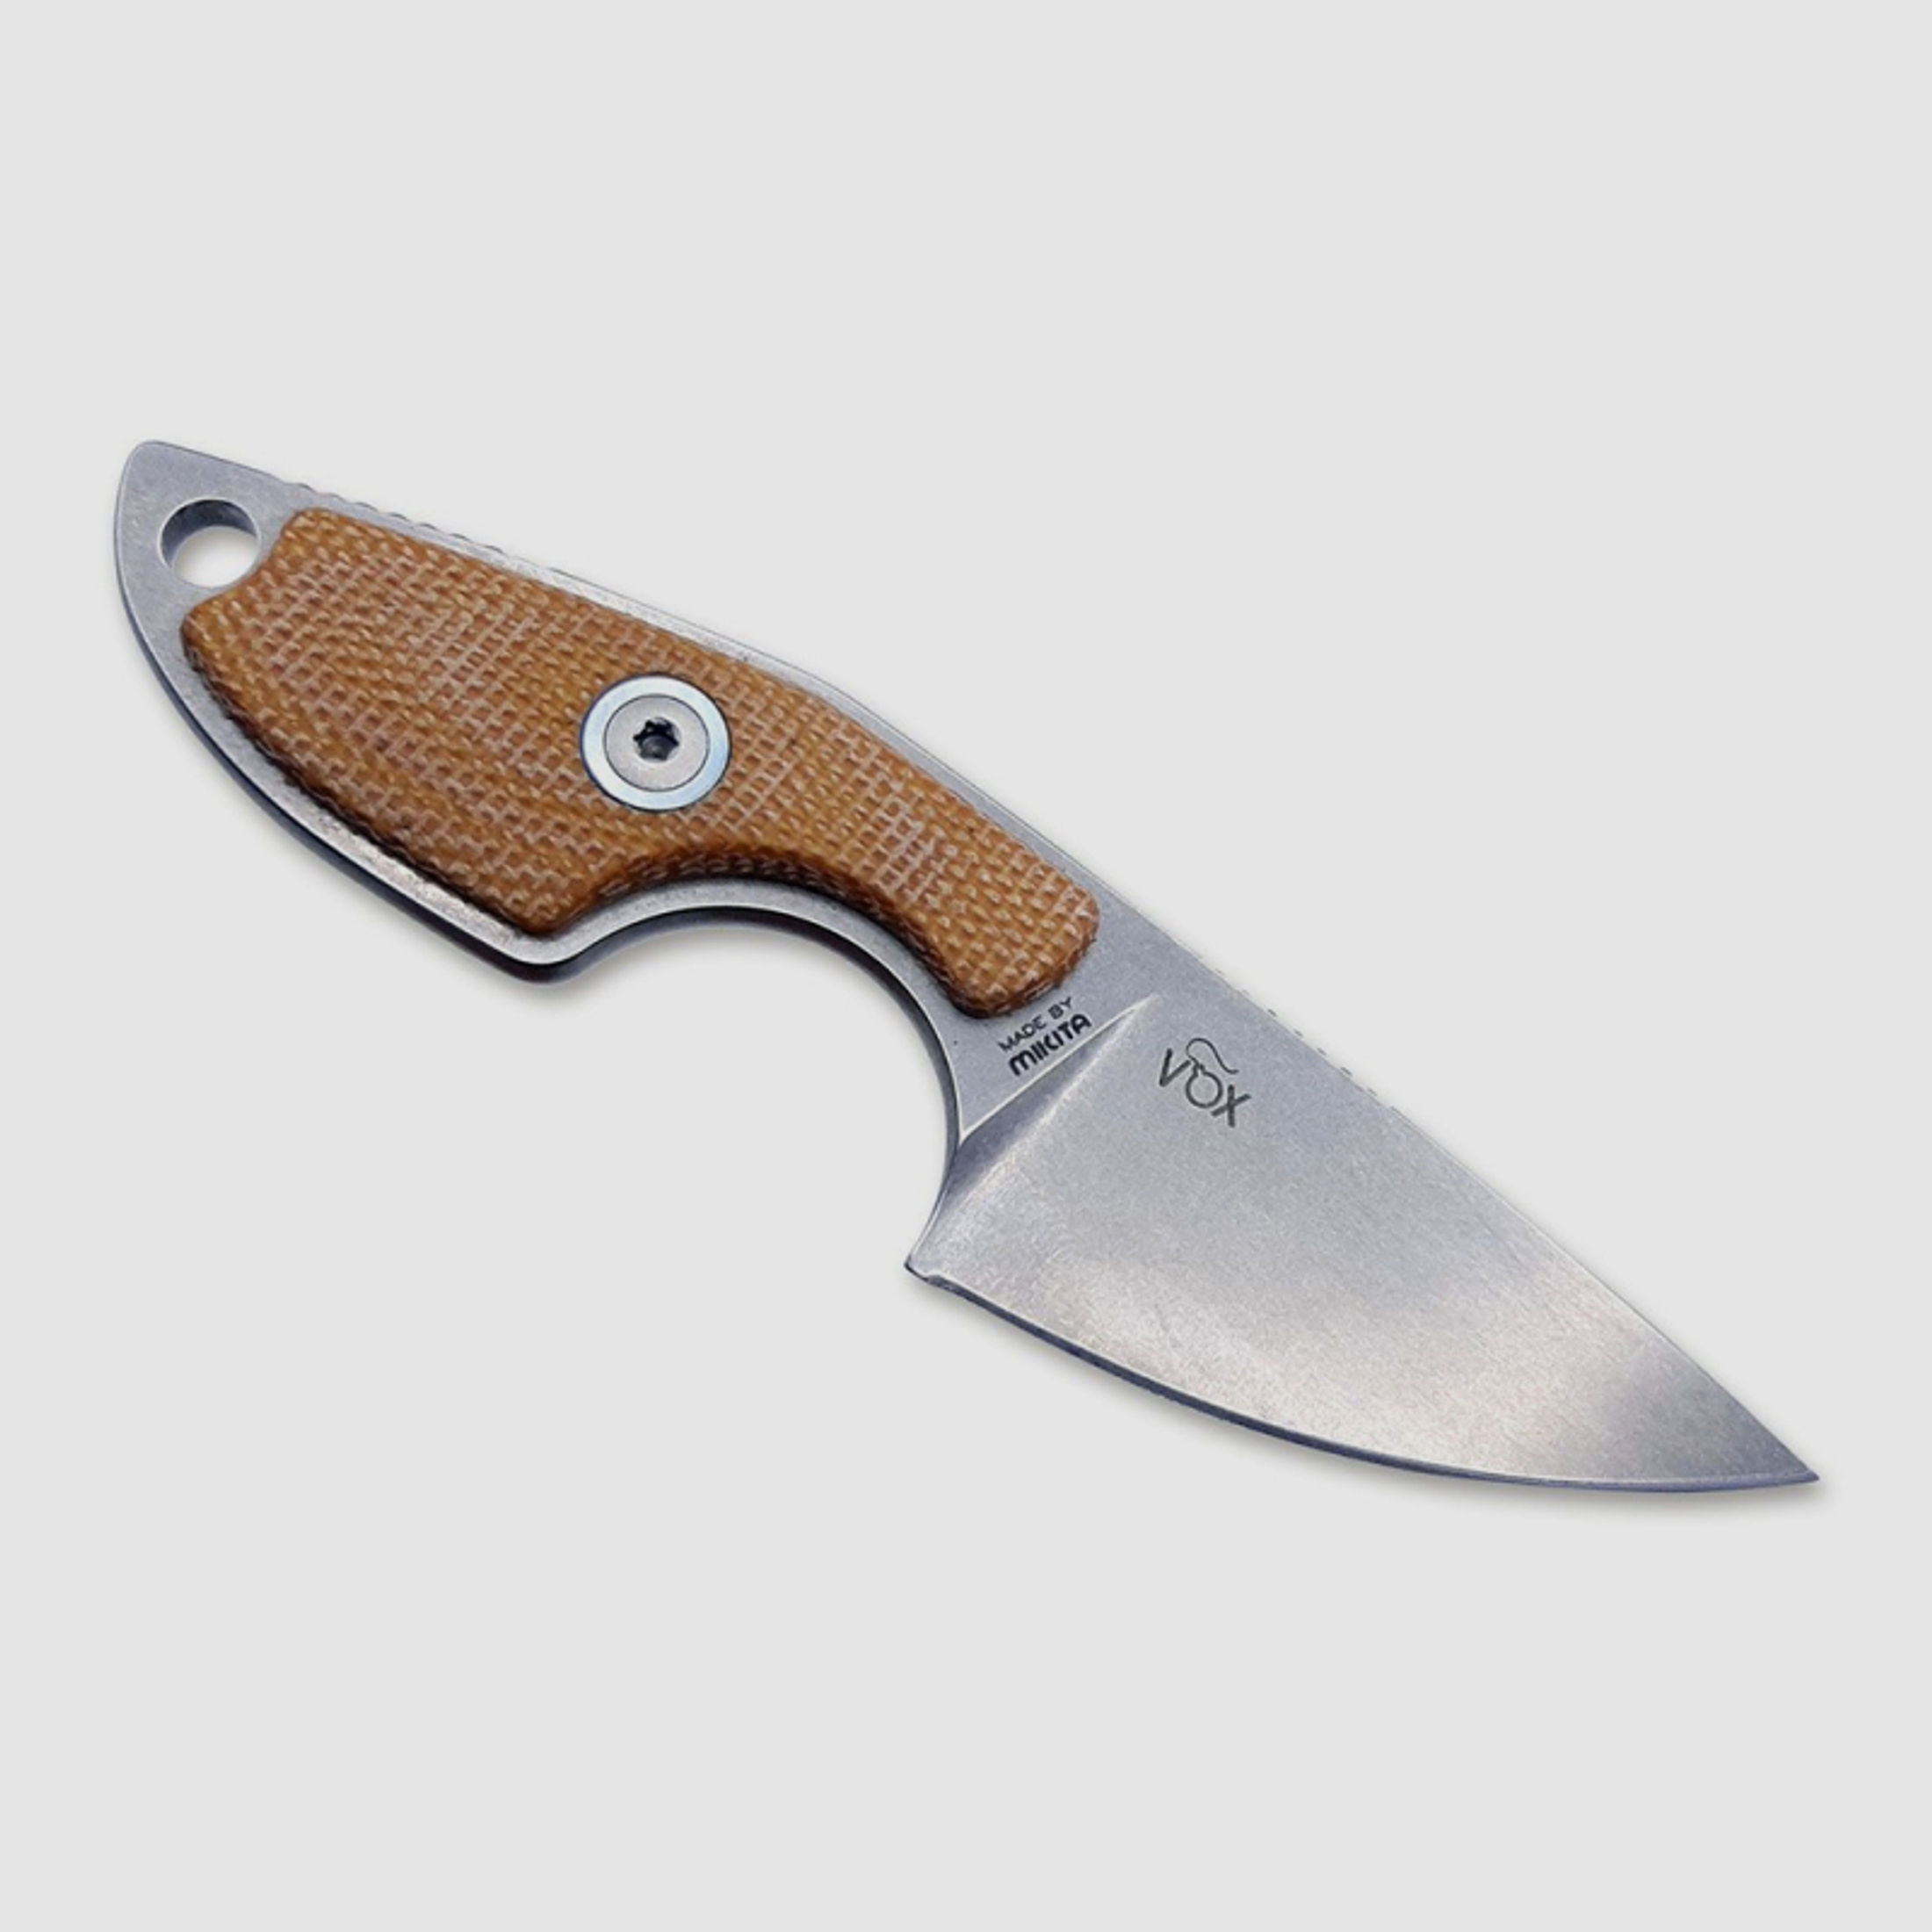 1 x MKM Mikro 1 Neck Knife | Feststehendes Messer 5,0cm Klinge M390 Stahl Micarta Griffschalen Braun